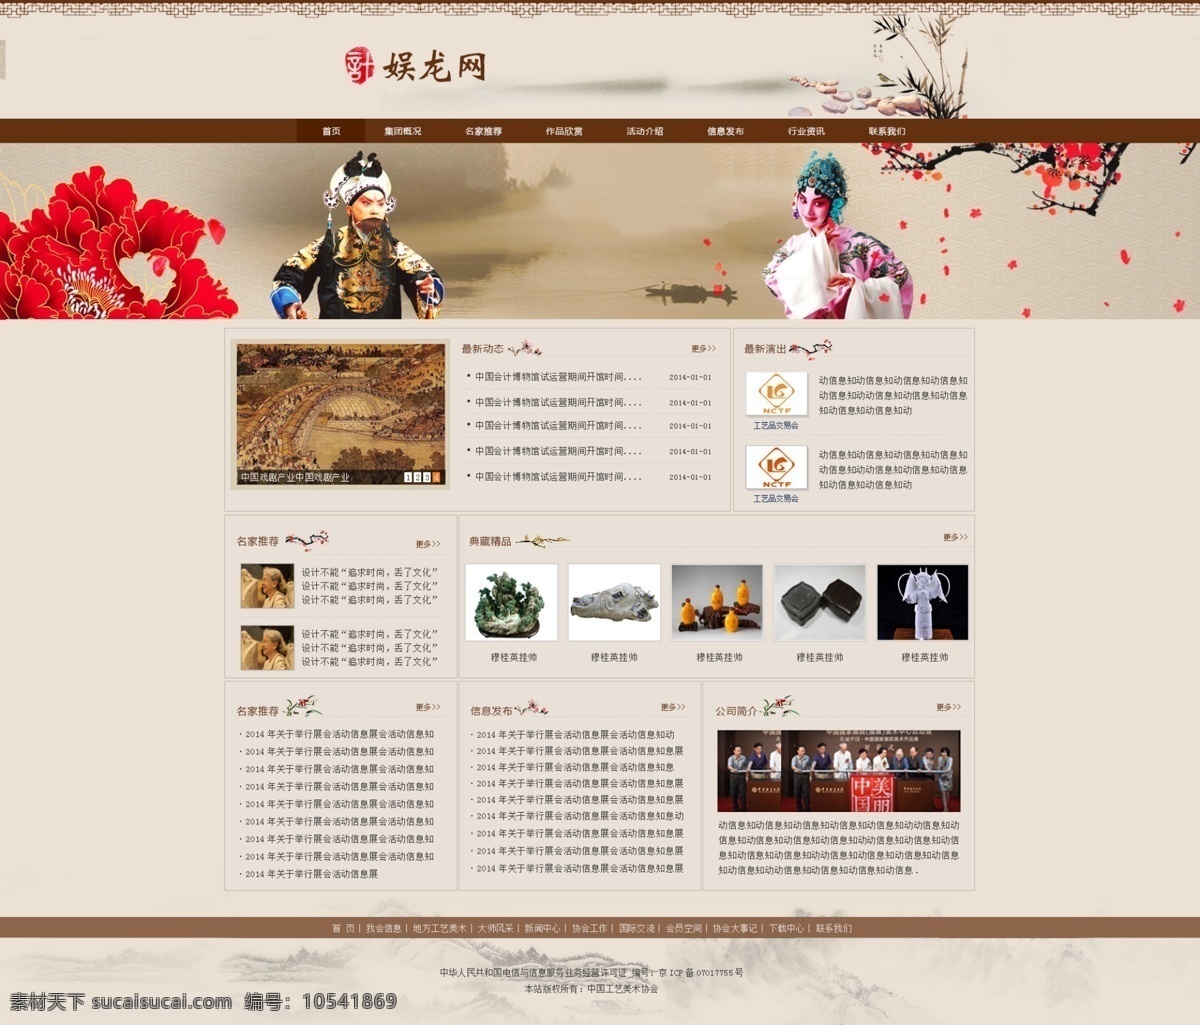 戏剧网站首页 中国风素材 戏剧网站 红色网站设计 网站首页设计 网站设计 内页设计 企业 网站首页